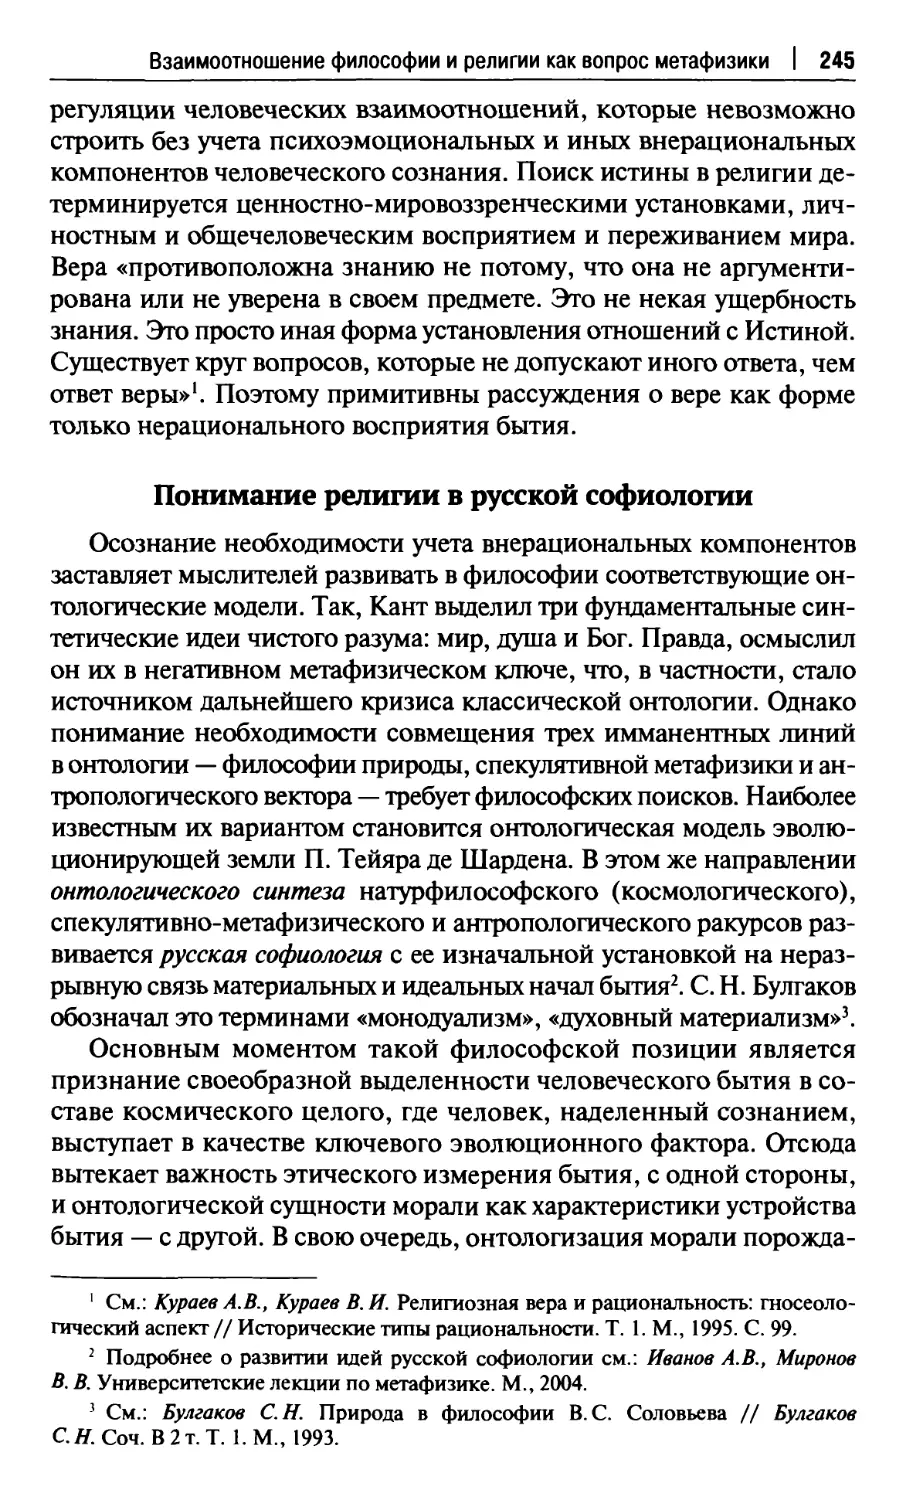 Понимание религии в русской софиологии